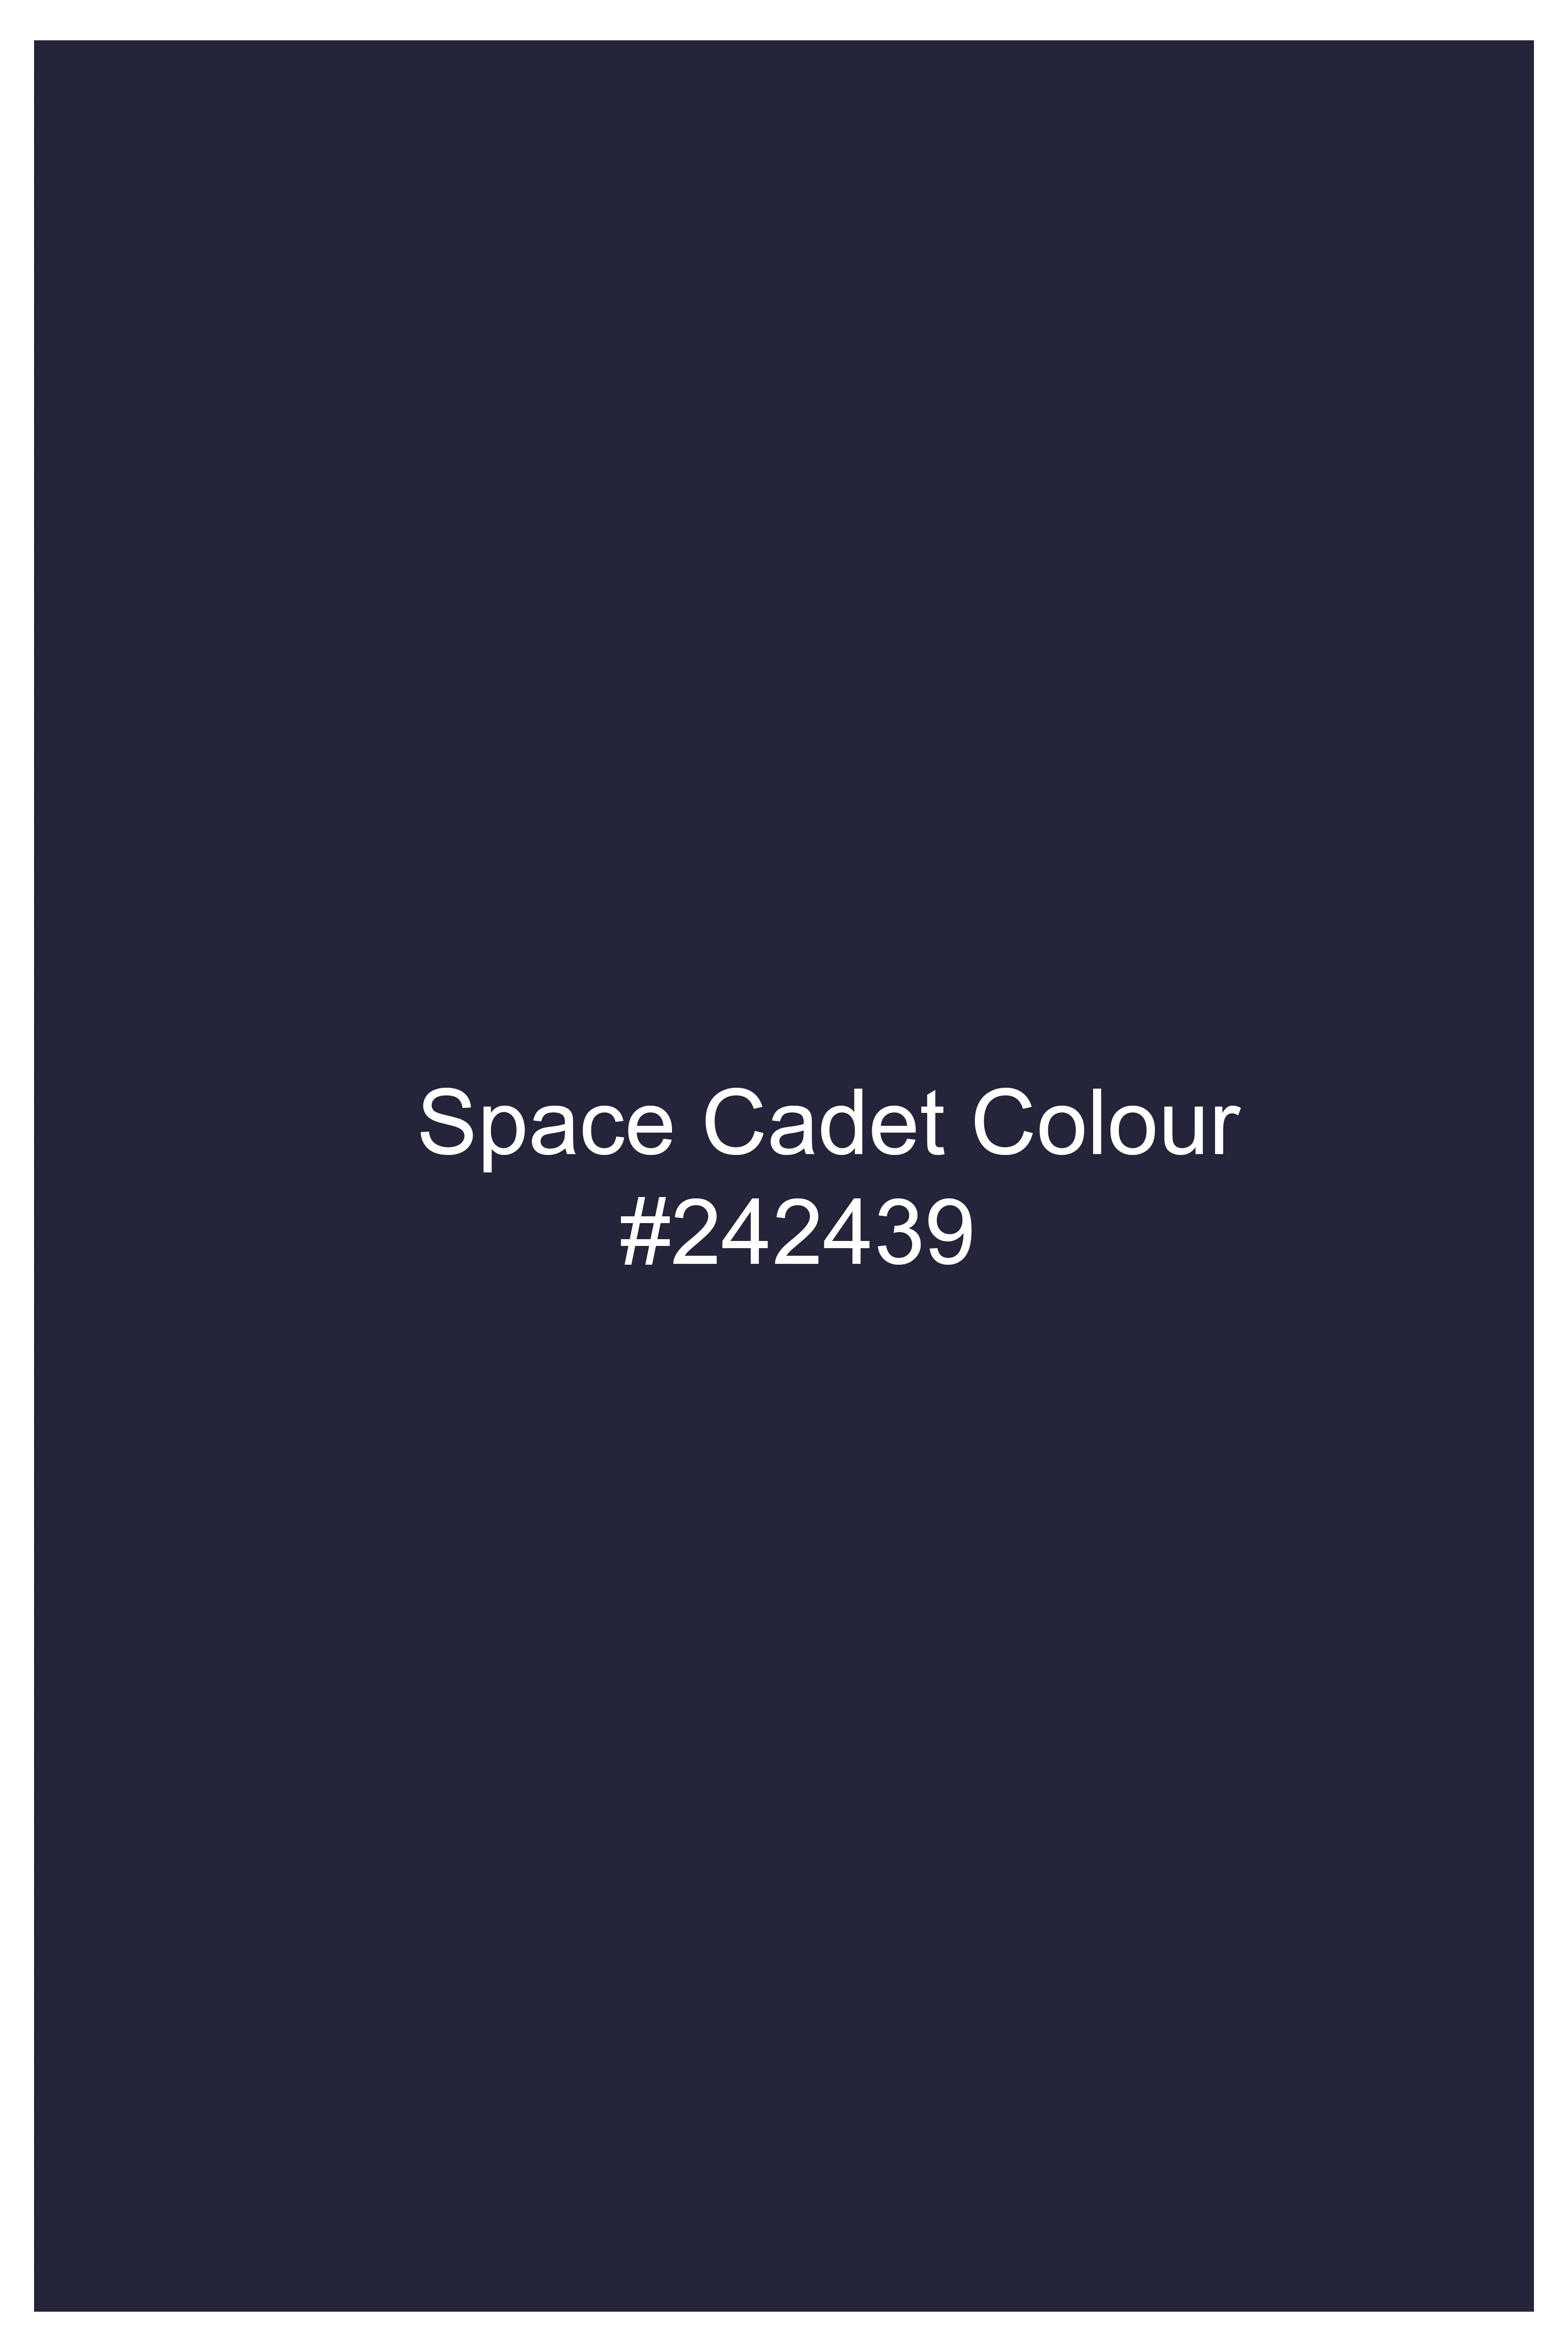 Space Cadet Blue Wool Rich Designer Blazer BL3014-D132-36, BL3014-D132-38, BL3014-D132-40, BL3014-D132-42, BL3014-D132-44, BL3014-D132-46, BL3014-D132-48, BL3014-D132-50, BL3014-D132-52, BL3014-D132-54, BL3014-D132-56, BL3014-D132-58, BL3014-D132-60